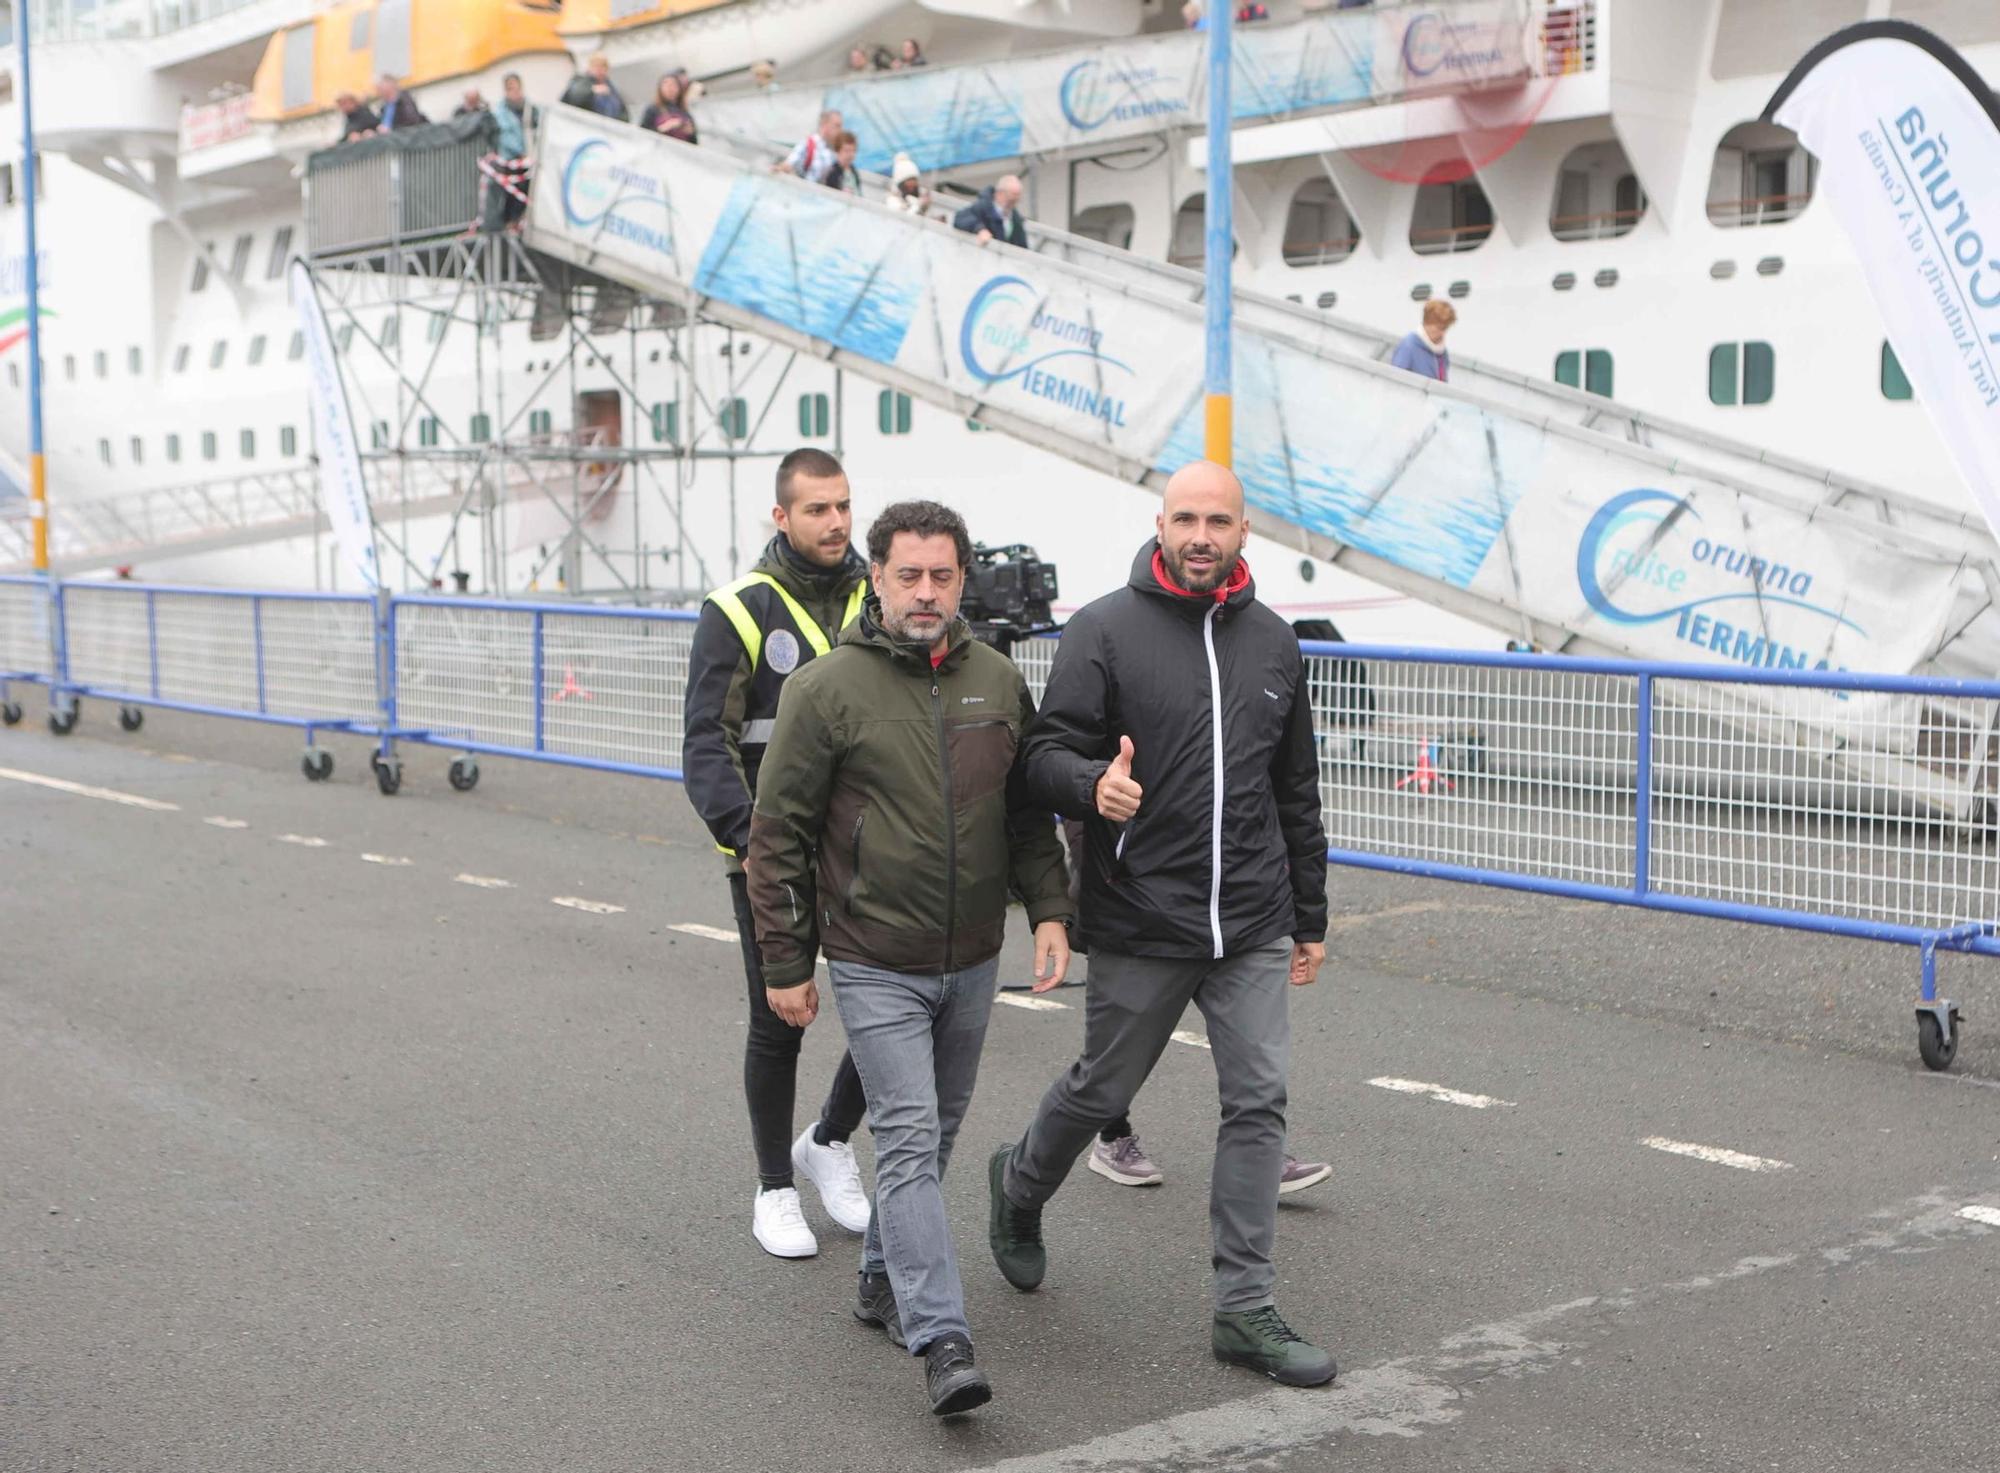 Simulacro de alerta terrorista en un crucero en el Puerto de A Coruña